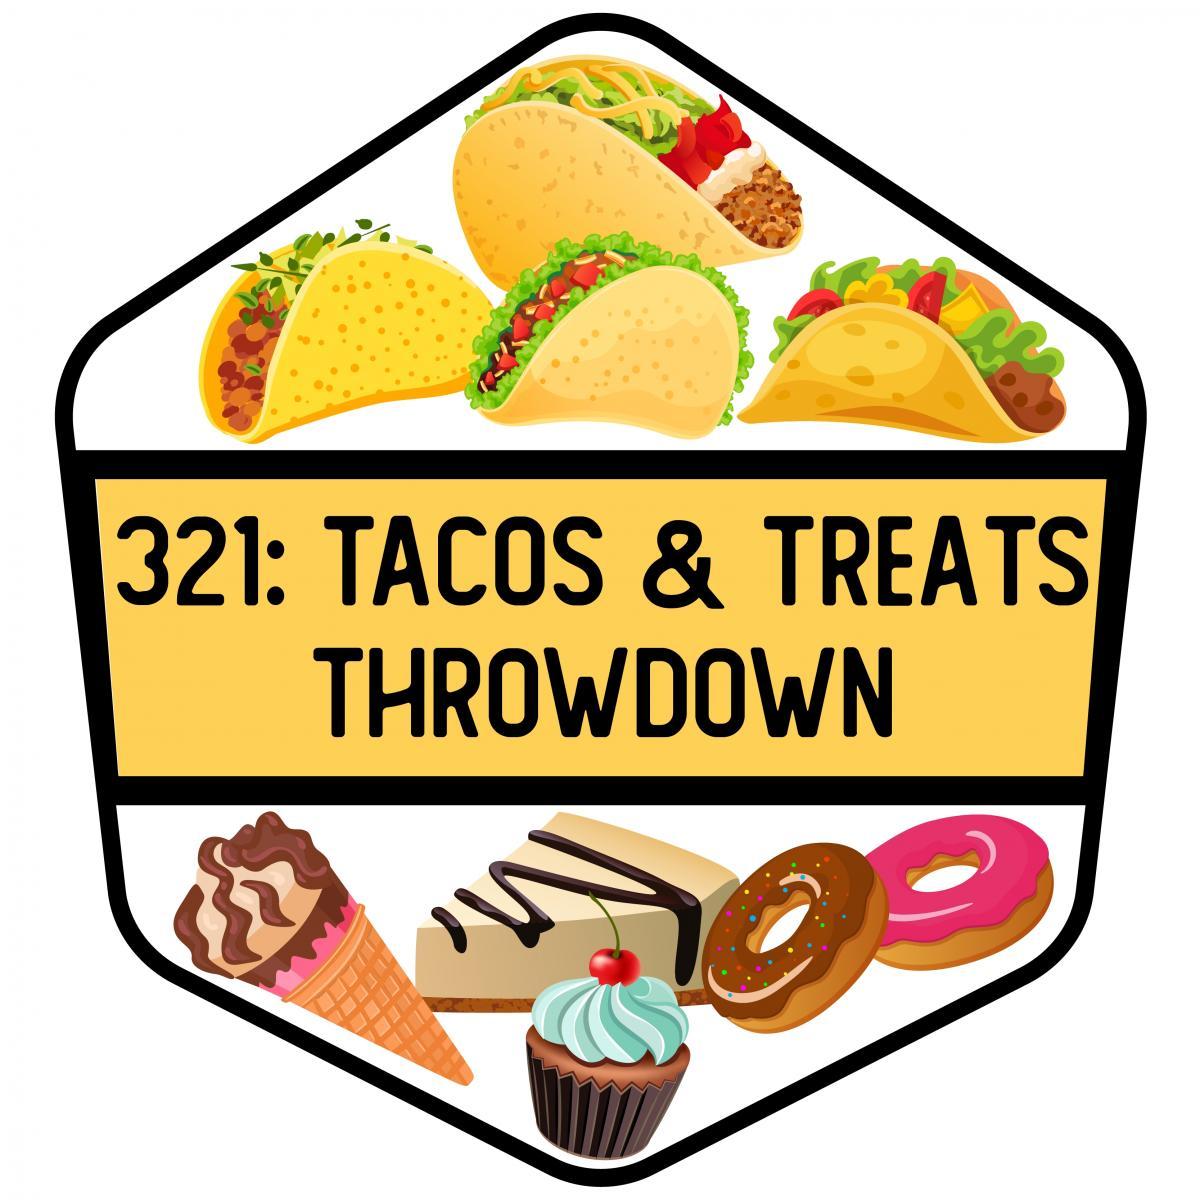 321: Tacos & Treats Throwdown 2023 (3rd Annual)